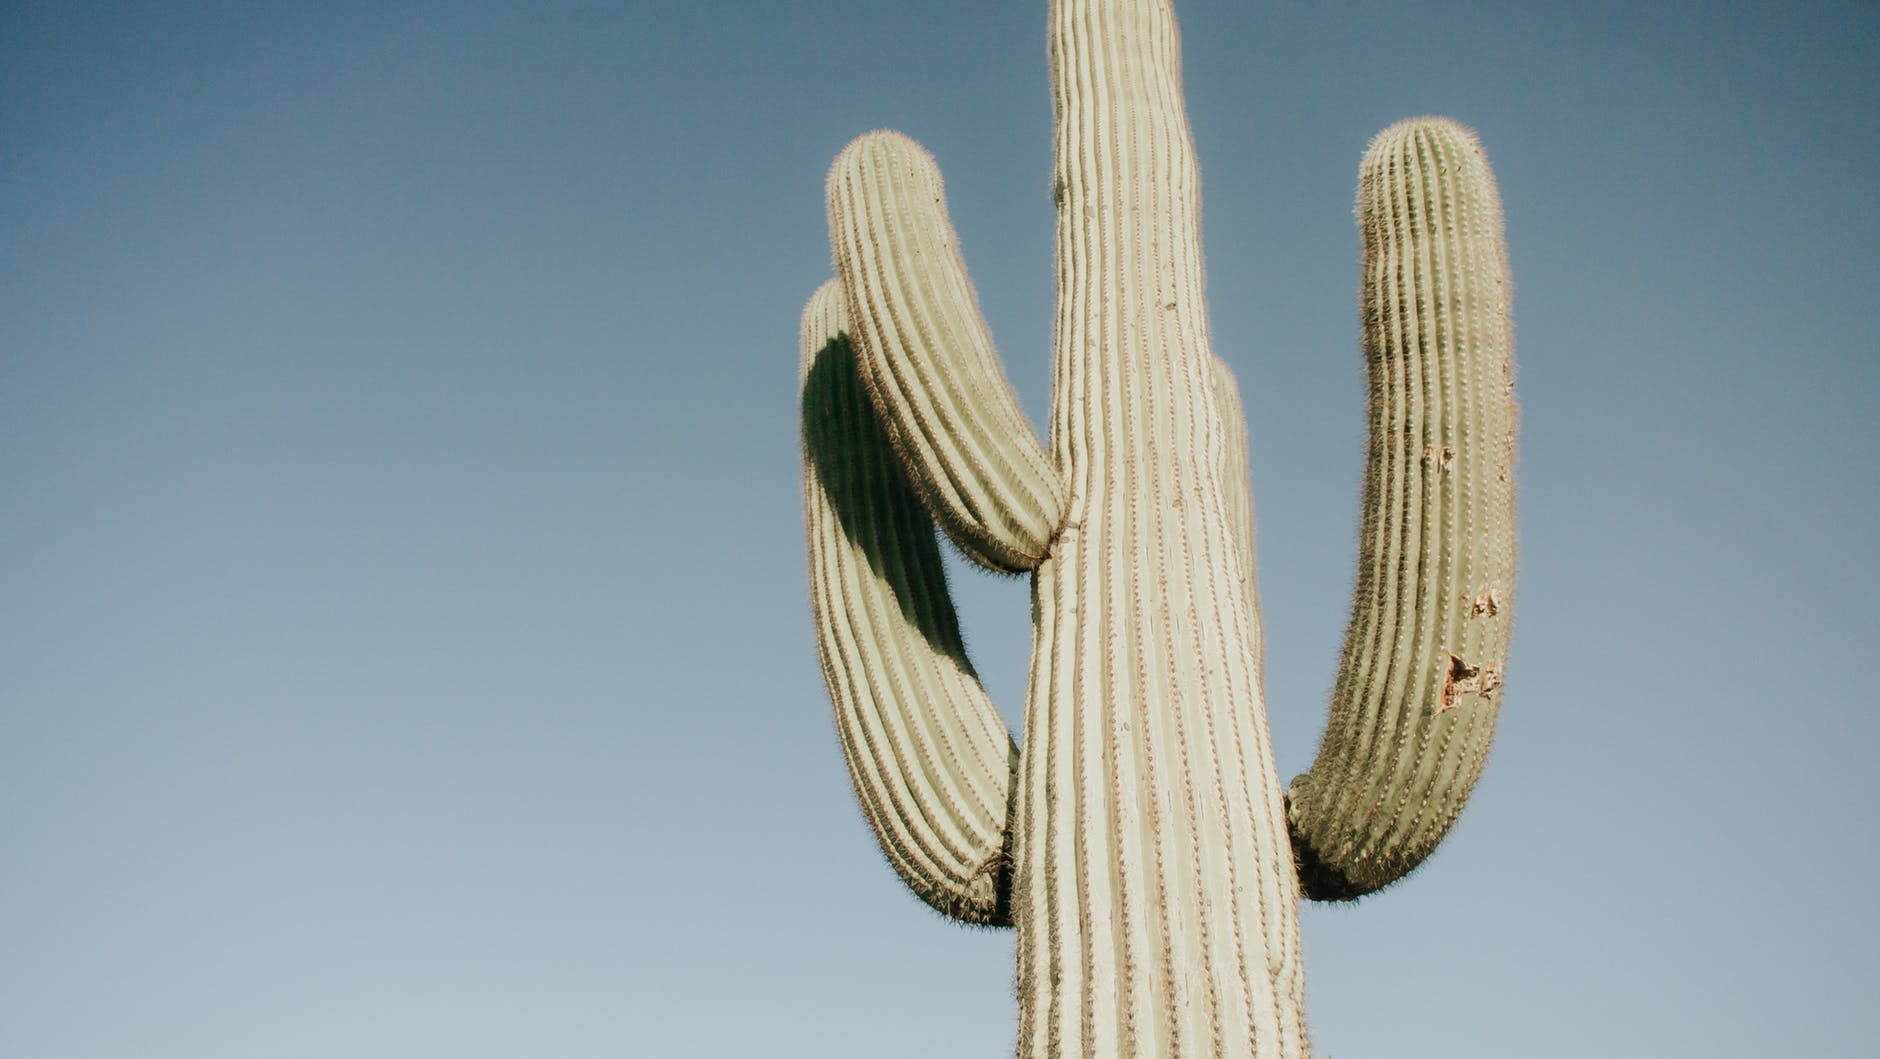 Cactus in the Chandler, AZ desert